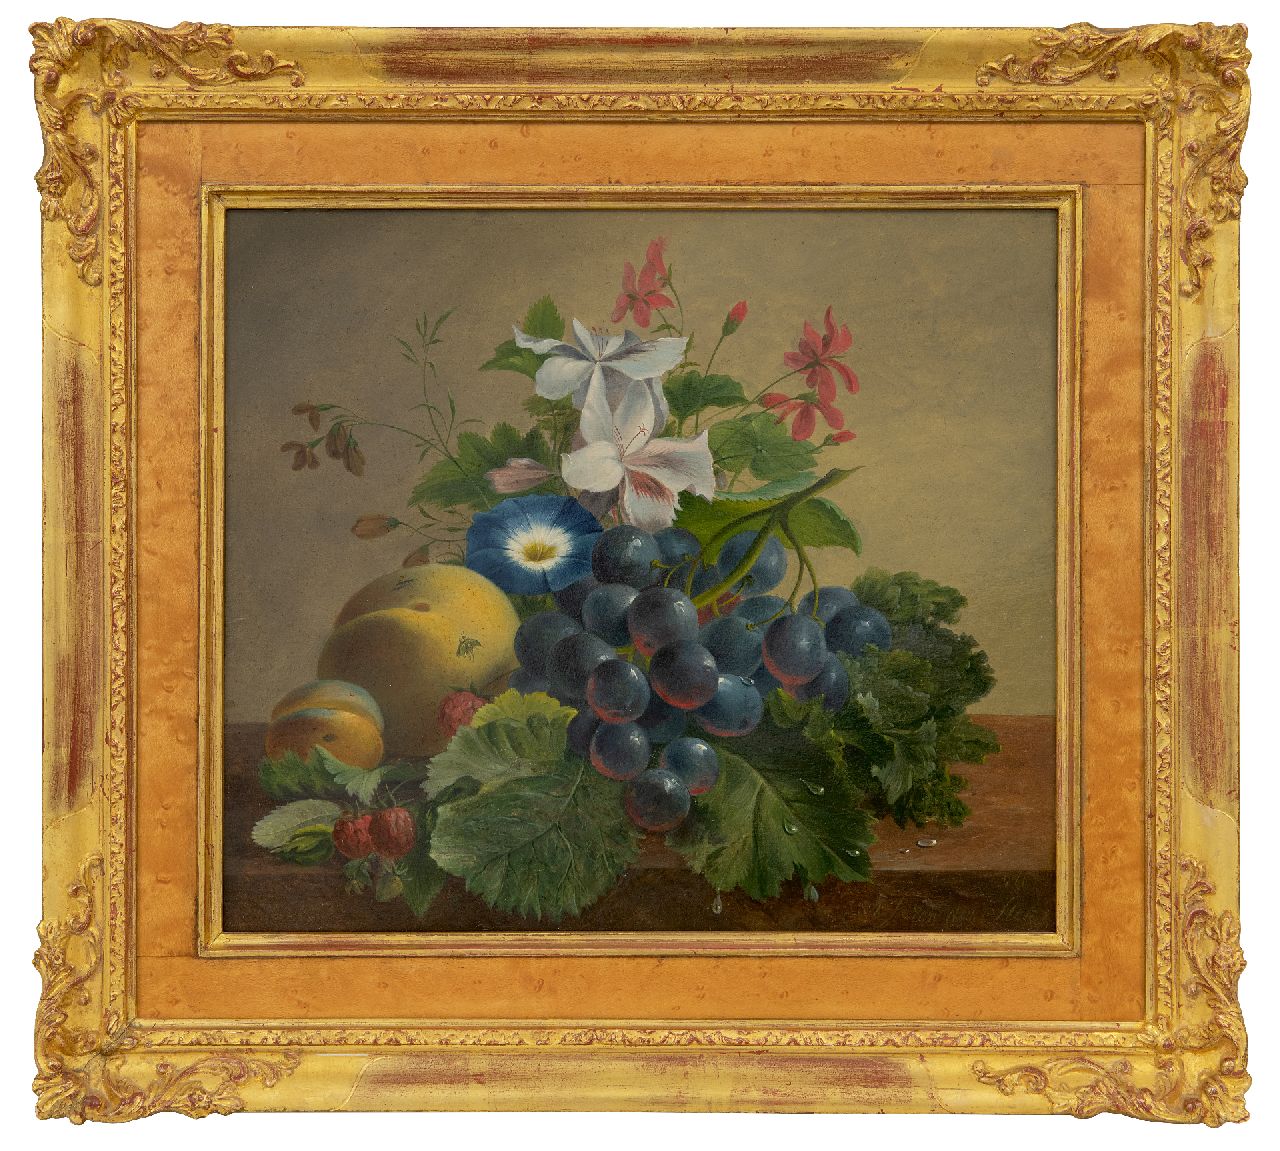 Stok J. van der | Jacoba van der Stok, Stilleven met bloemen en fruit op een plint, olieverf op paneel 26,2 x 30,1 cm, gesigneerd rechtsonder en gedateerd 1840